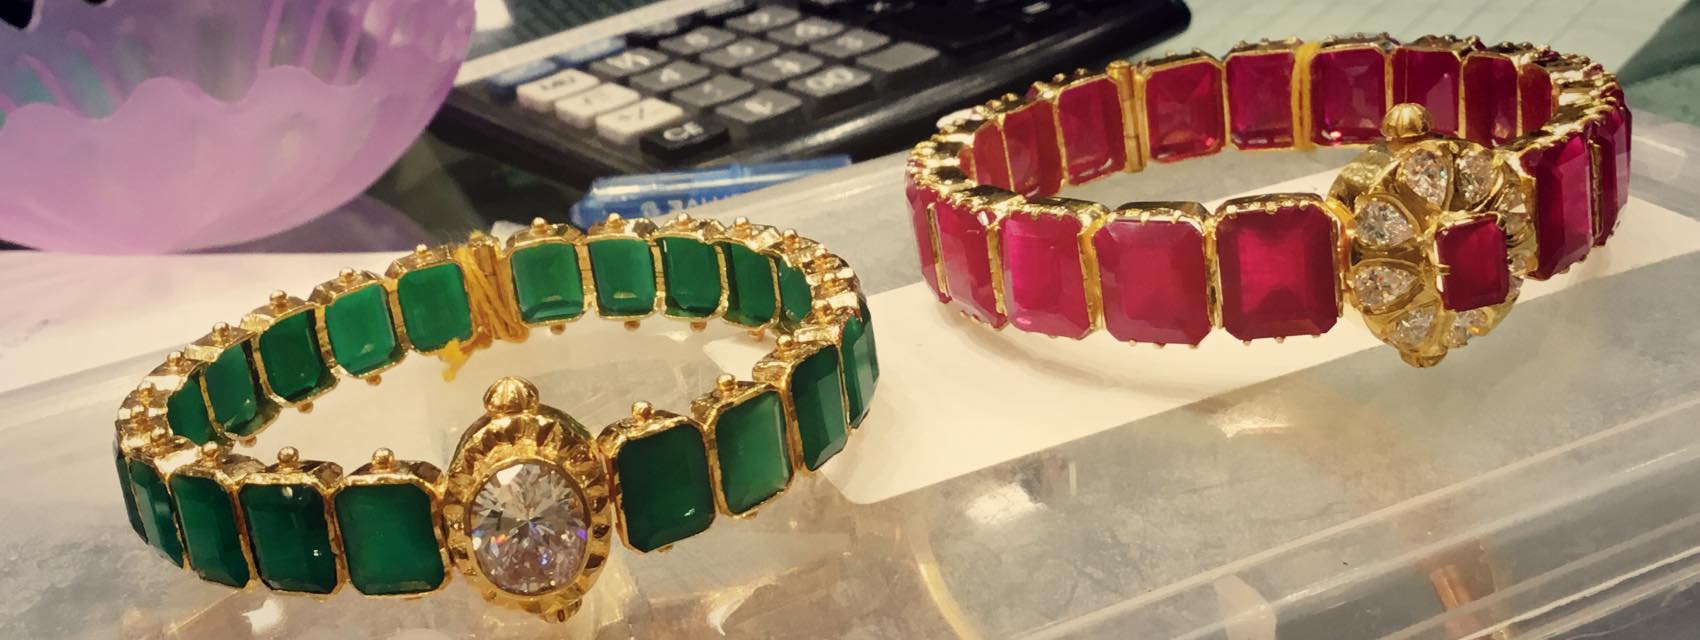 ruby emerald bangles